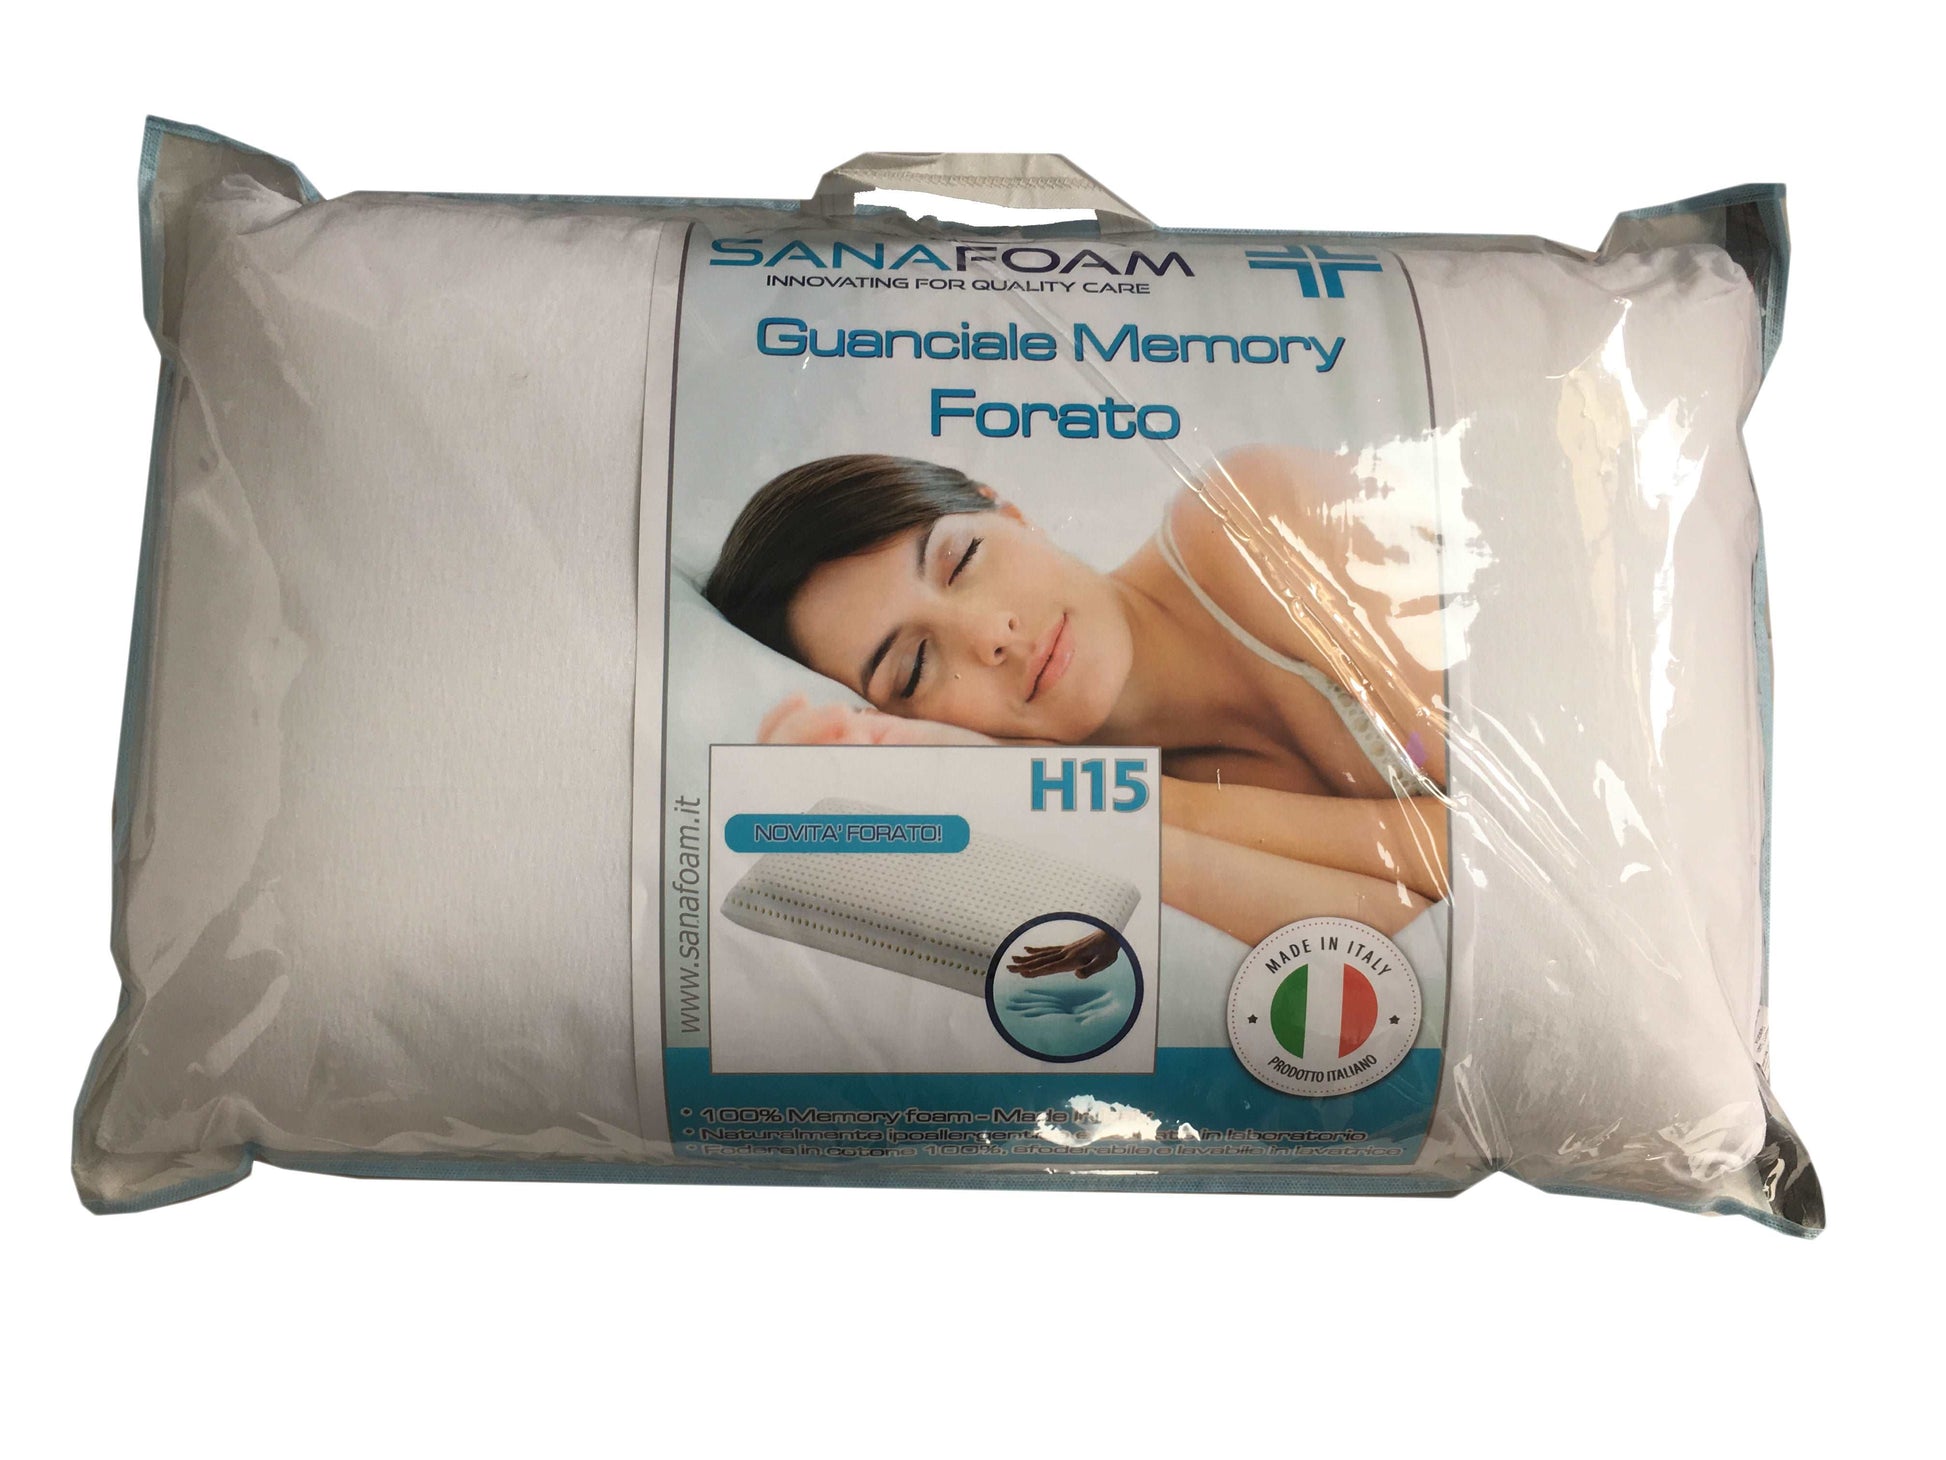 Guanciale Forato Memory Foam - SANAFOAM - I migliori prodotti Made in Italy da Fiera di Monza Shop - Solo 37€! Acquista subito su Fiera di Monza Shop!